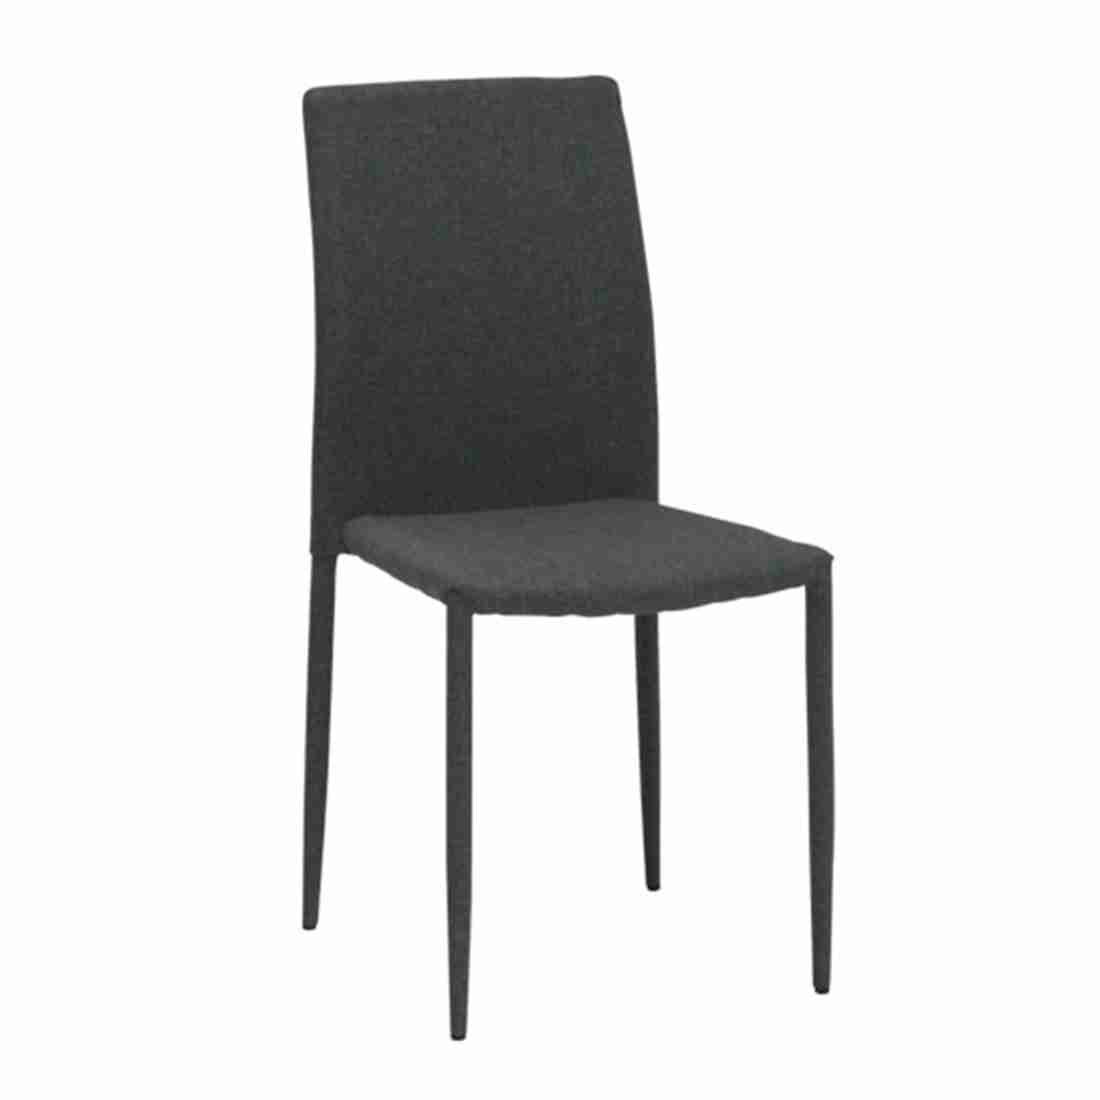 เก้าอี้AVONG/ผ้าเทาอ่อน-01